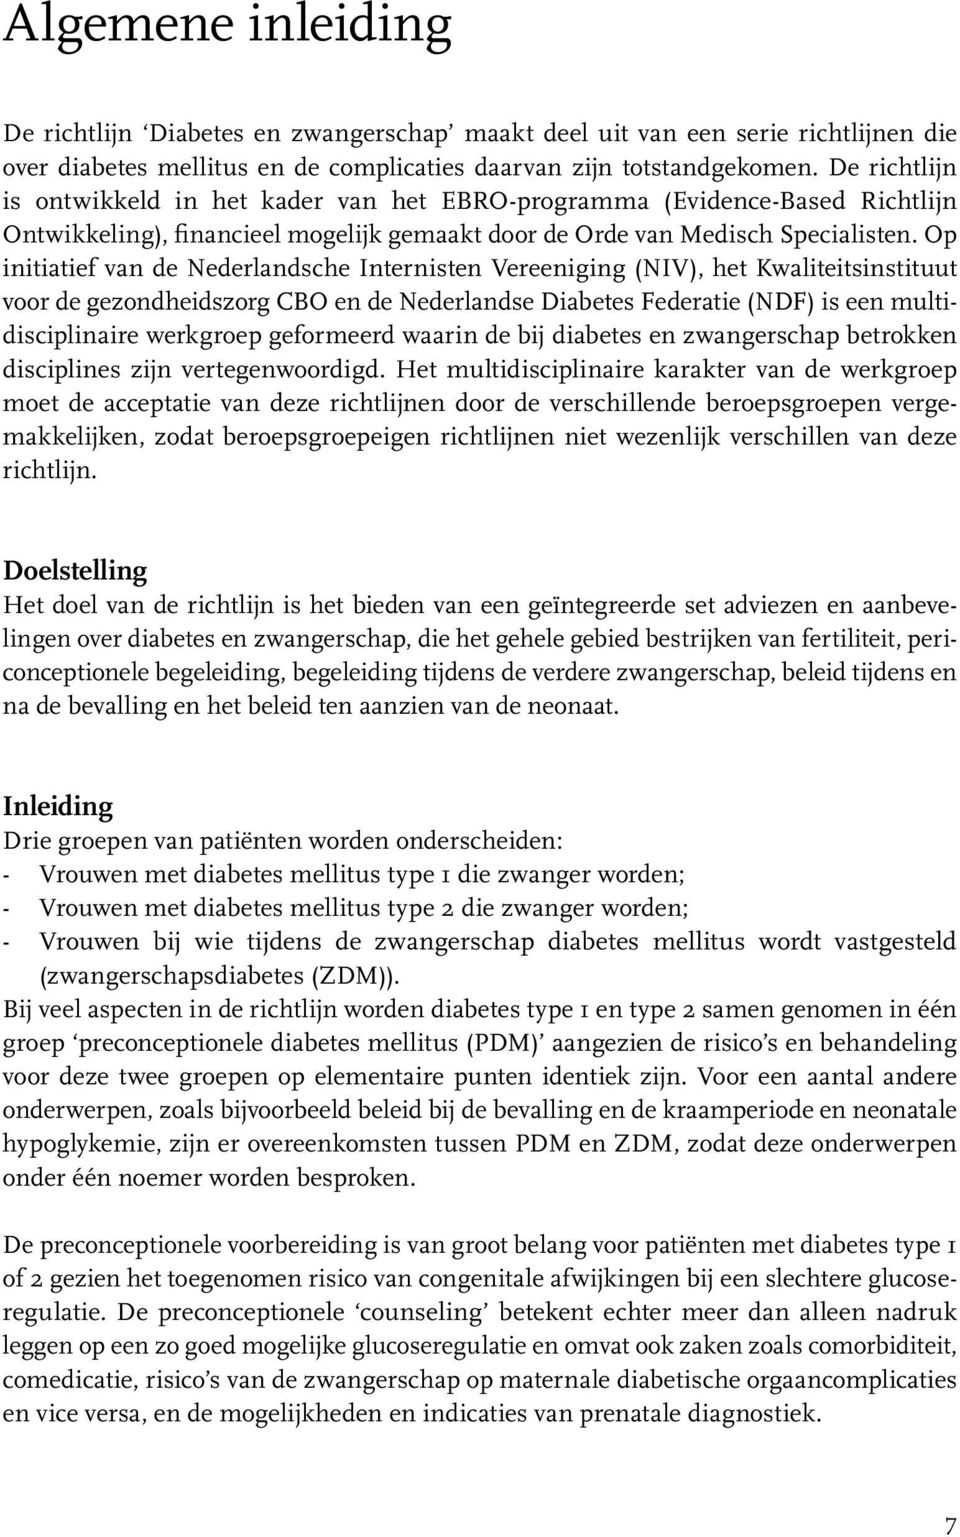 Op initiatief van de Nederlandsche Internisten Vereeniging (NIV), het Kwaliteitsinstituut voor de gezondheidszorg CBO en de Nederlandse Diabetes Federatie (NDF) is een multidisciplinaire werkgroep